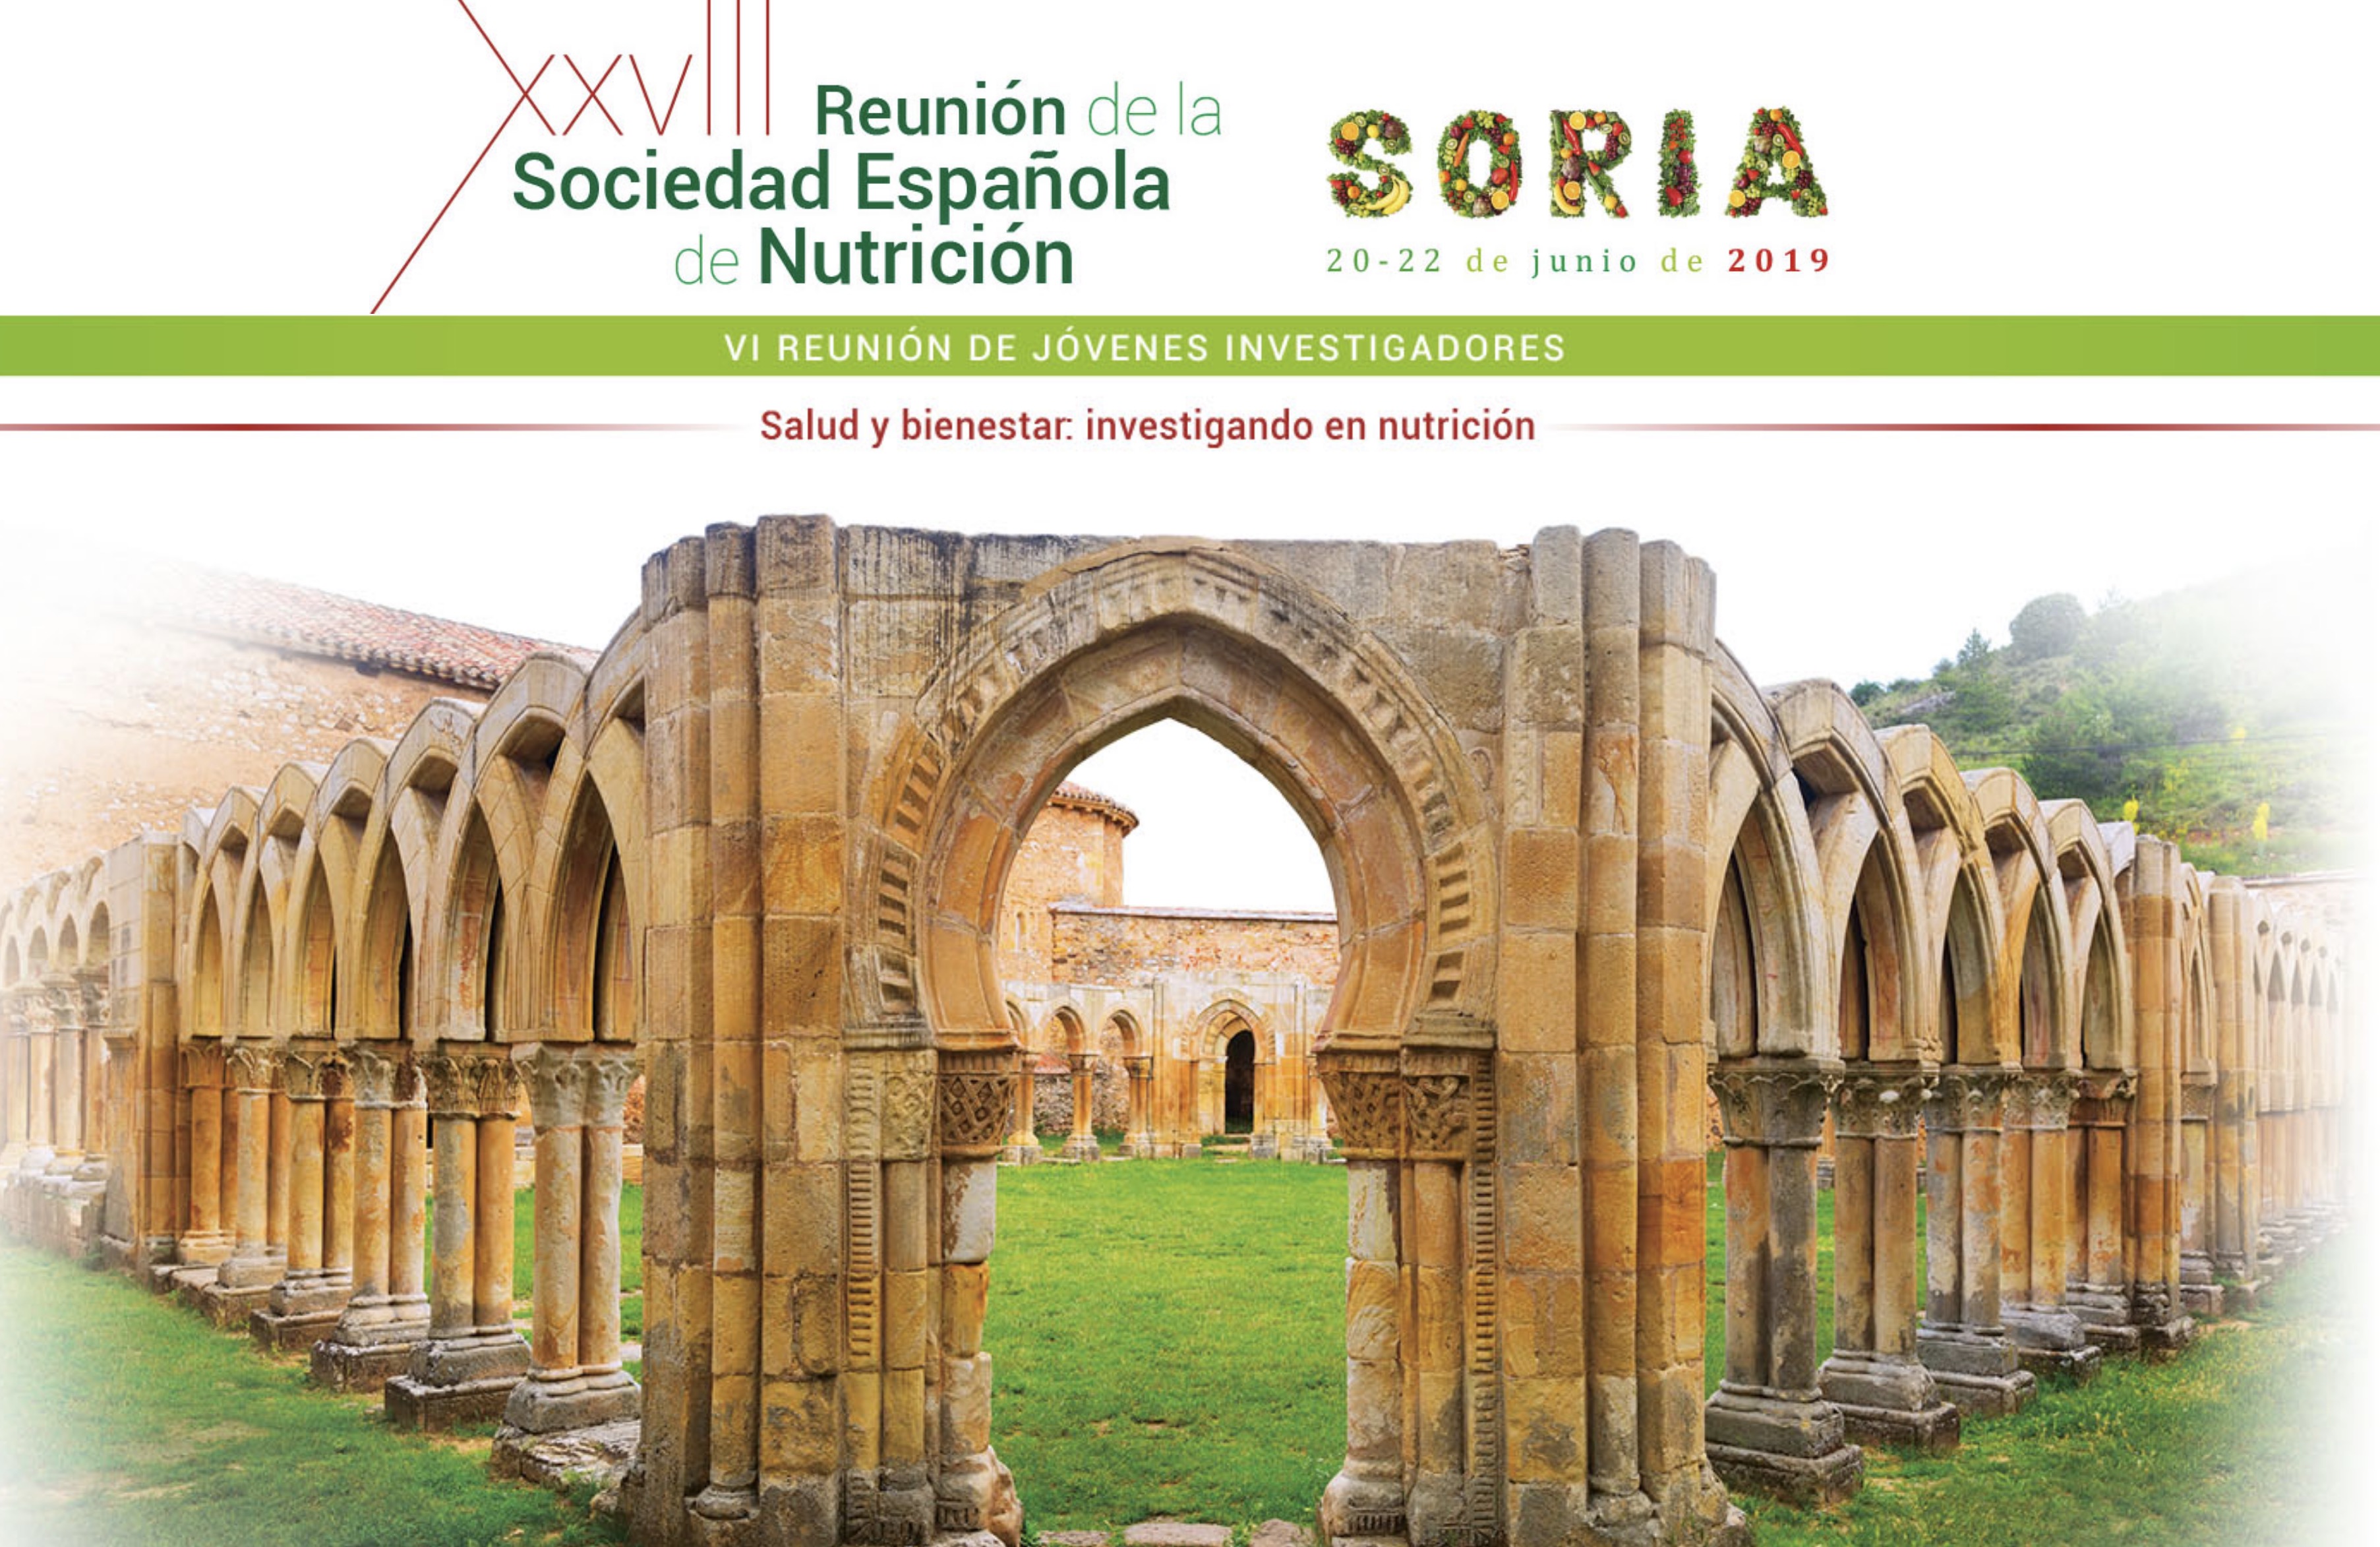 XXVIII Reunió de la Sociedad Española de Nutrición (SEÑ) i  VI Reunió de Jóvenes Investigadores-20 a 22 juny (Sòria)